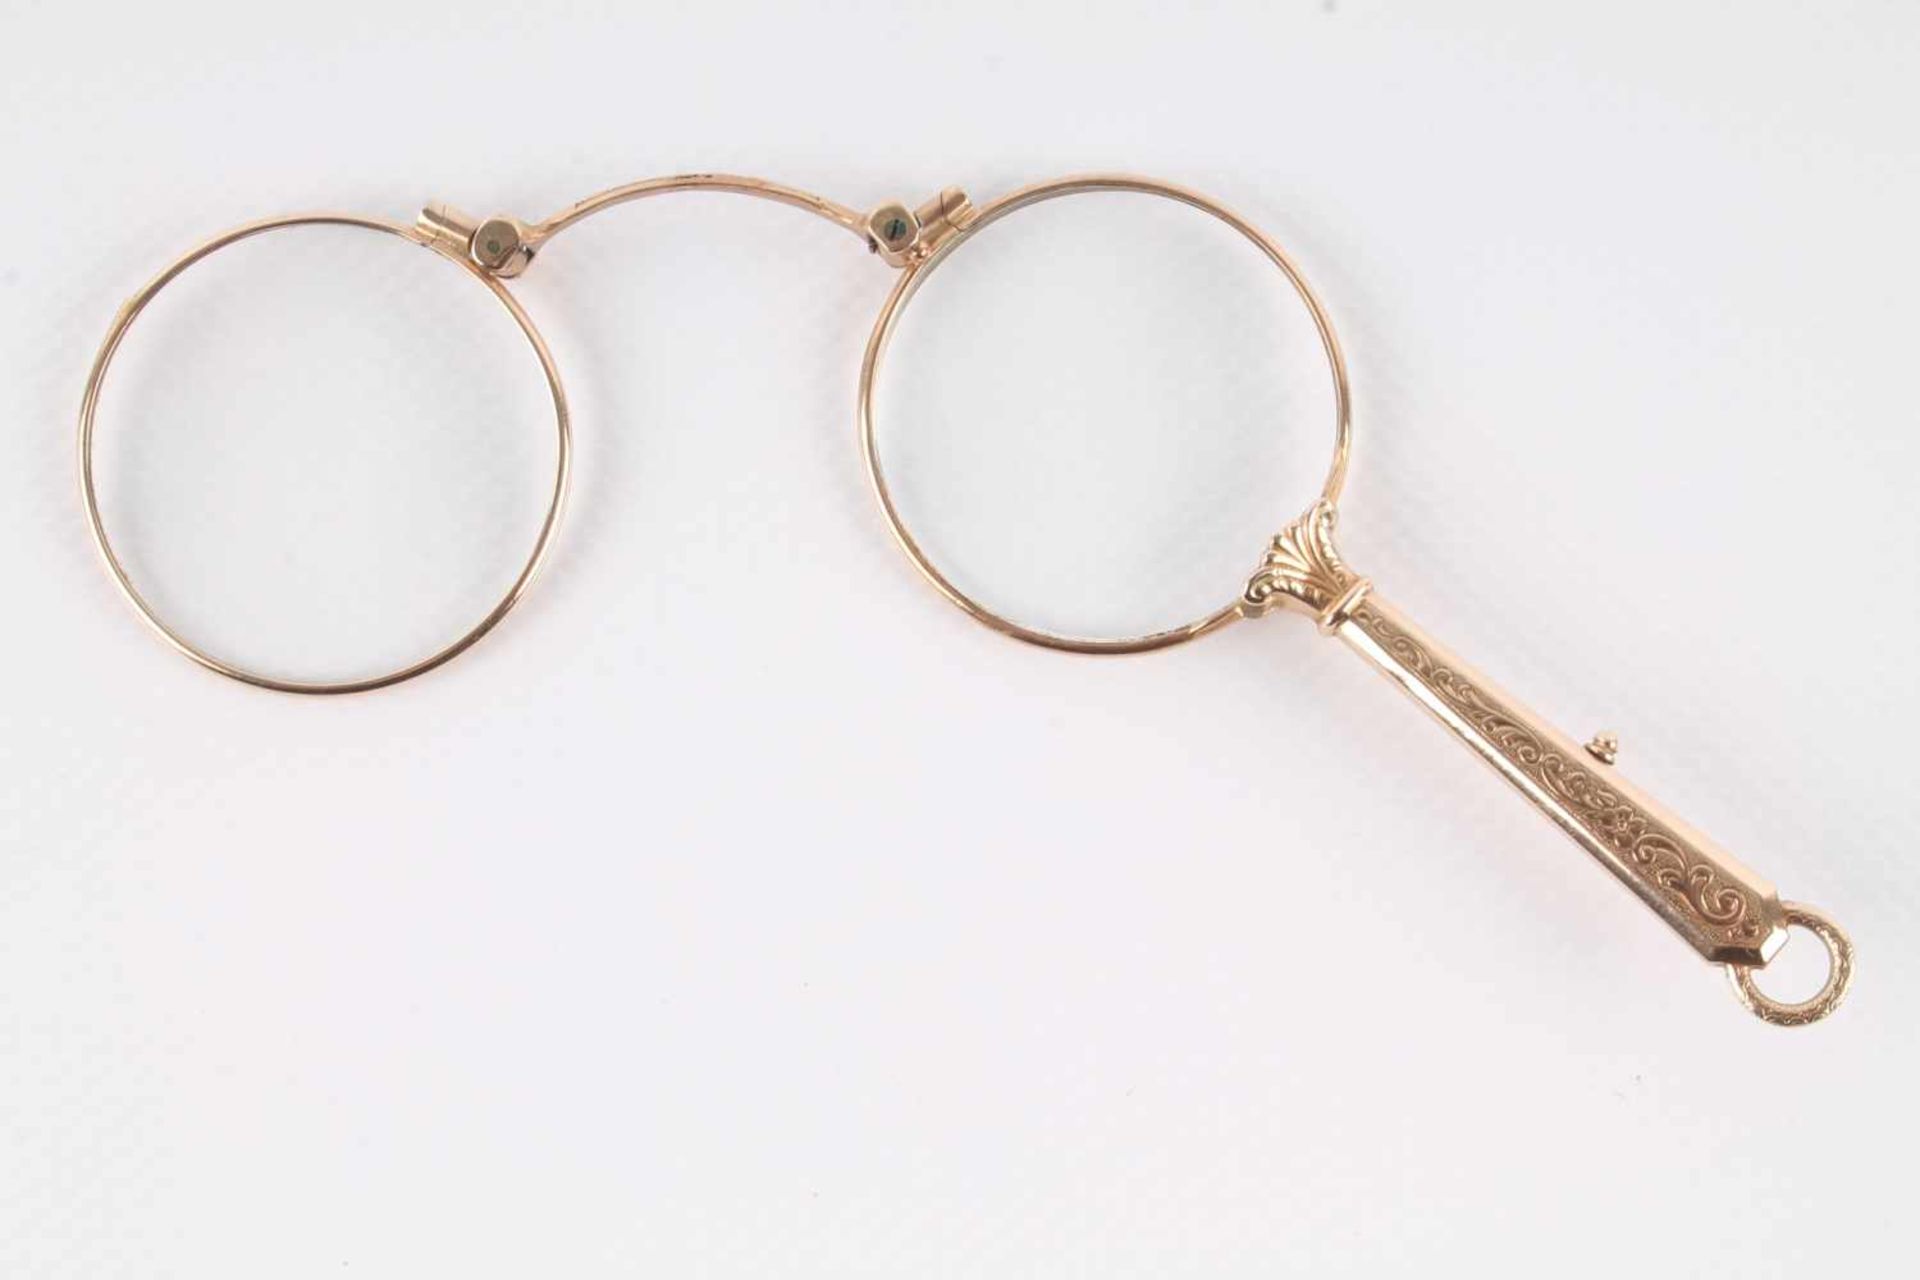 Jugendstil Lorgnette 585 Gold, Stielbrille in 14K Gold, geprüft jedoch ungemakt, Maße offen H 7,5 cm - Bild 2 aus 5